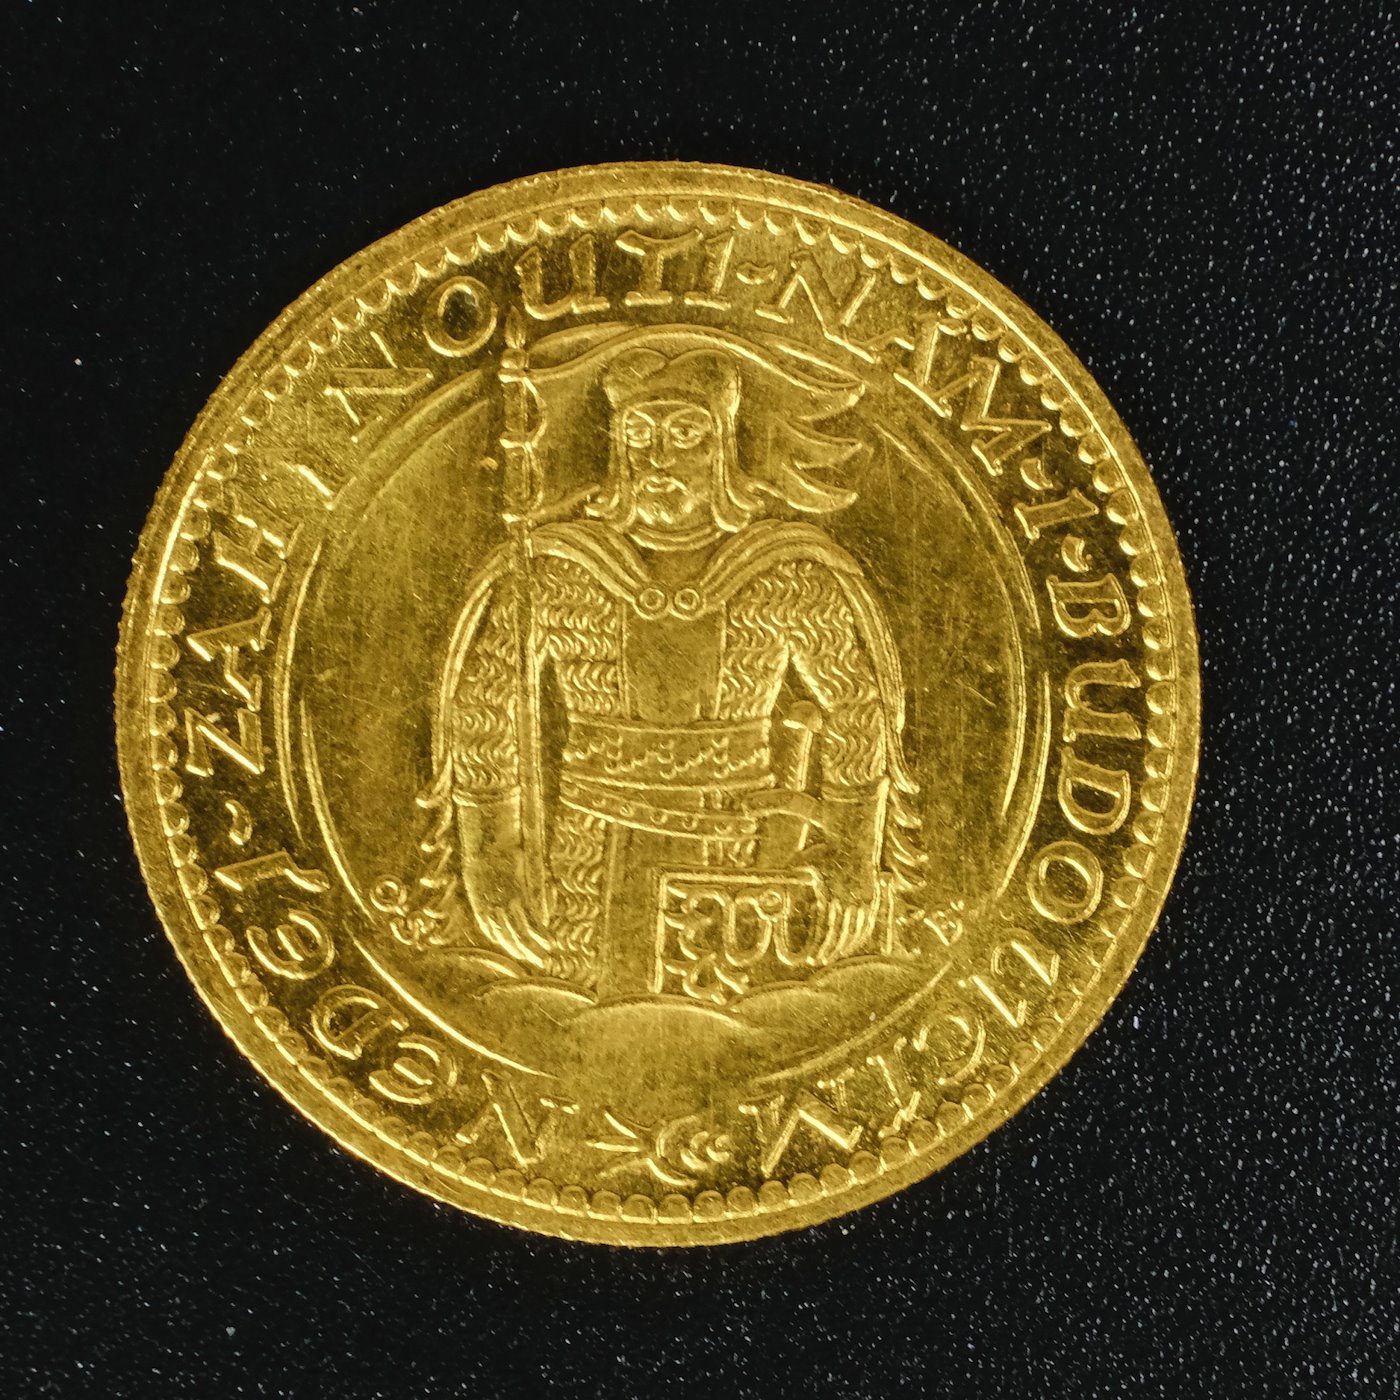 Mince - Československá republika Svatováclavský dukát 1936 RR! Zlato 986/1000, hrubá hmotnost mince 3,49g